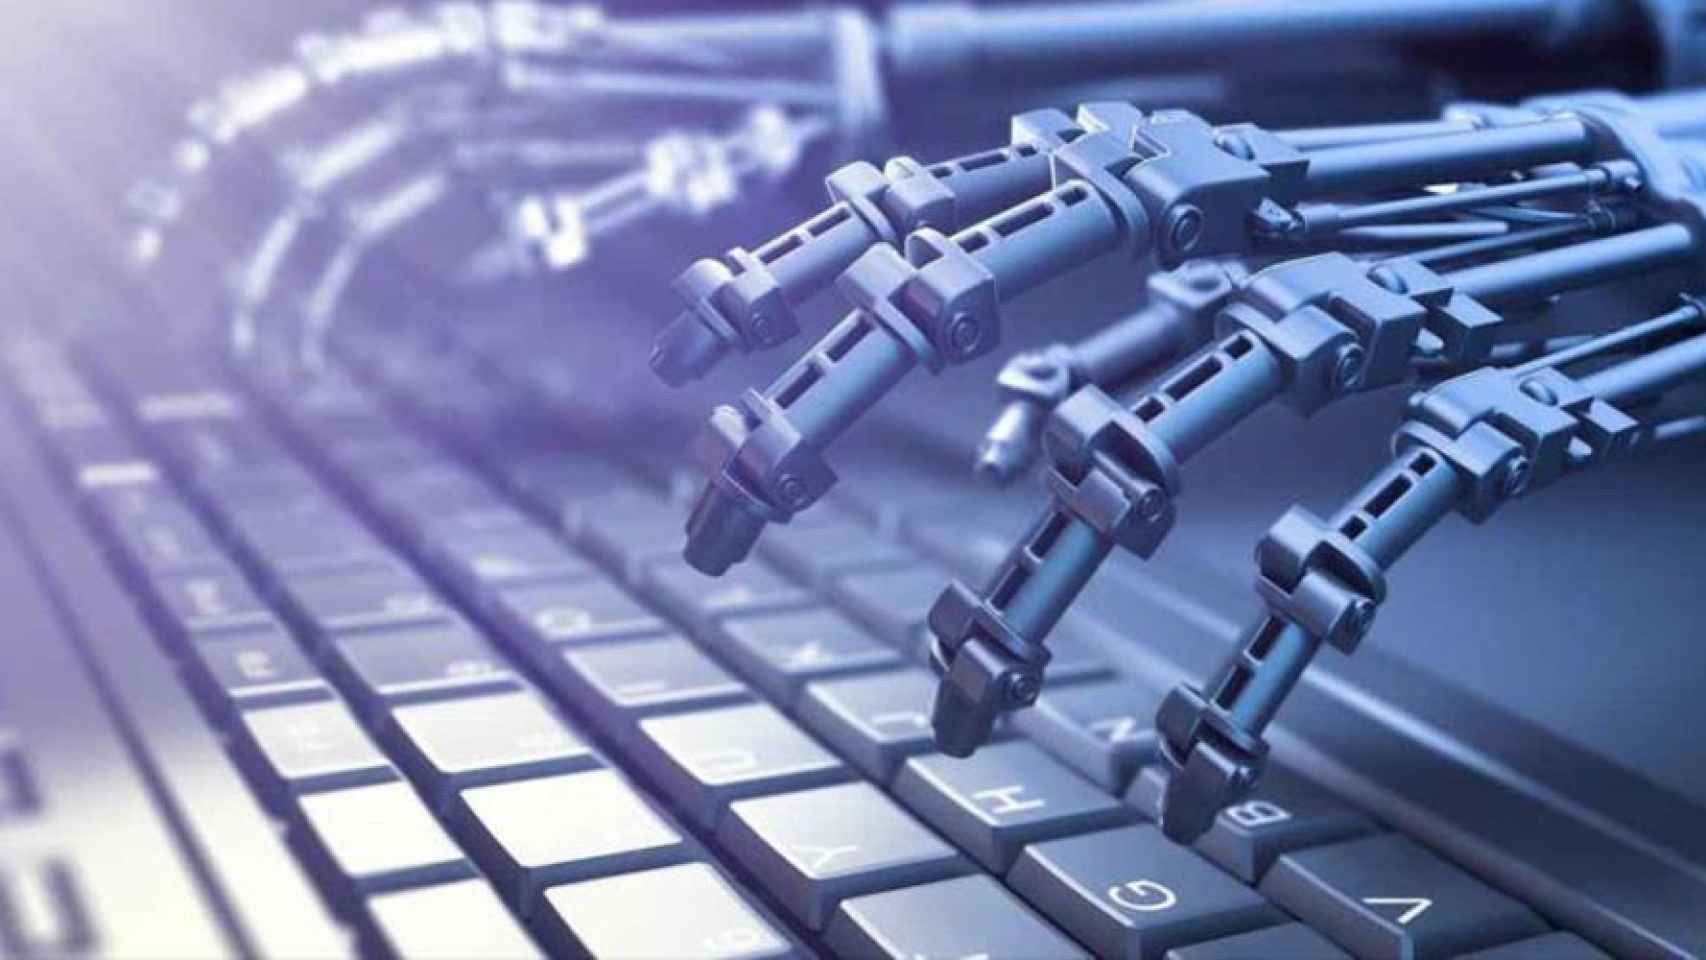 inteligencia artificial robot teclado